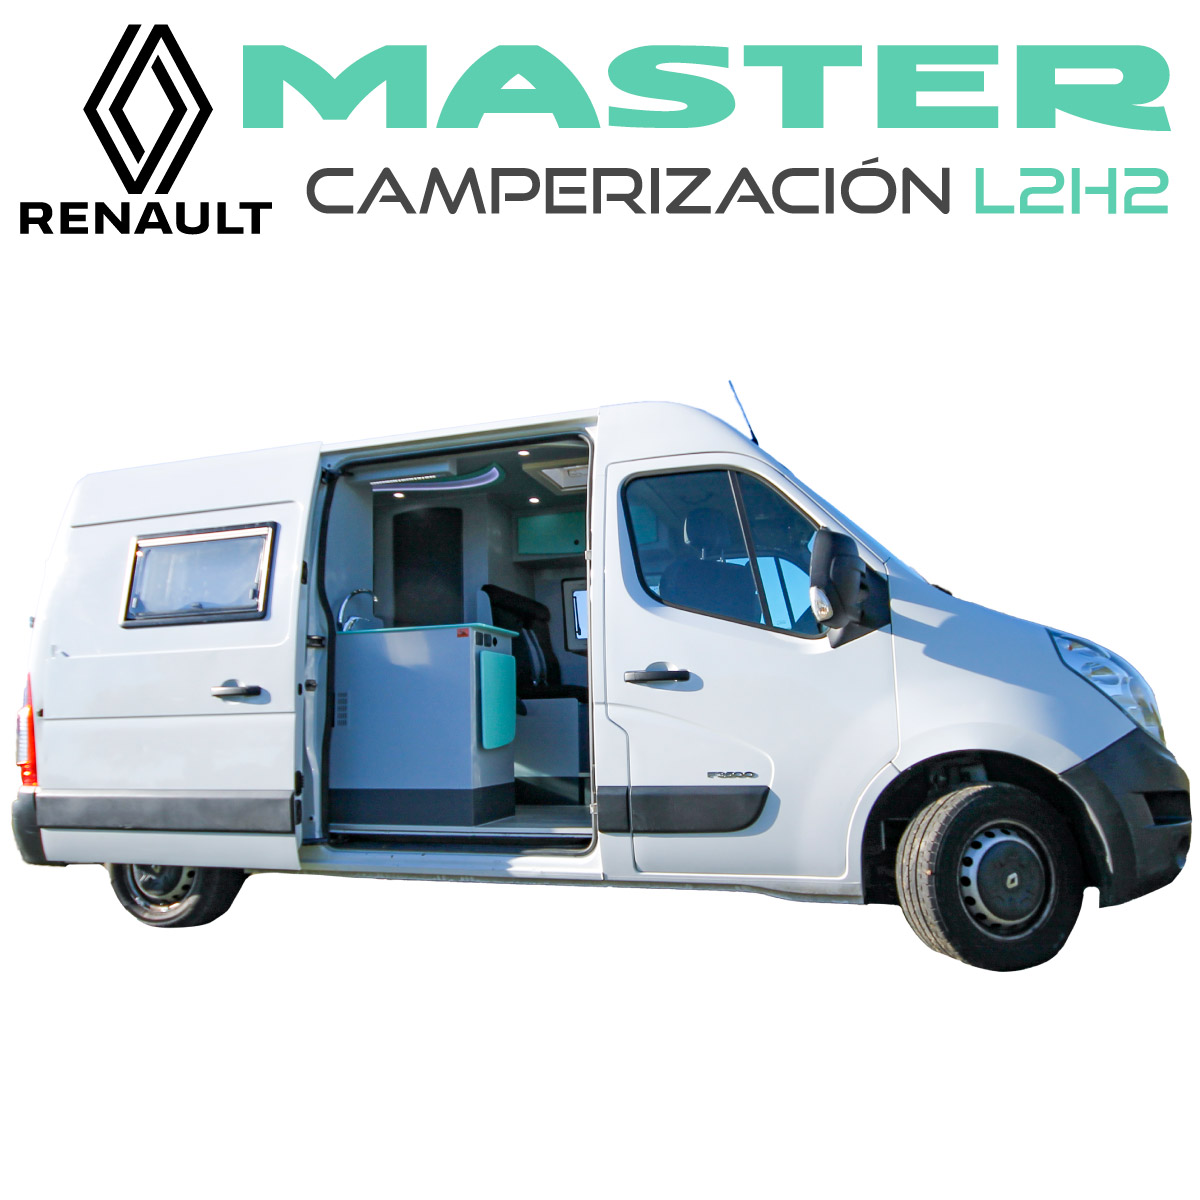 Camperización Renault Master L2H2 Portada